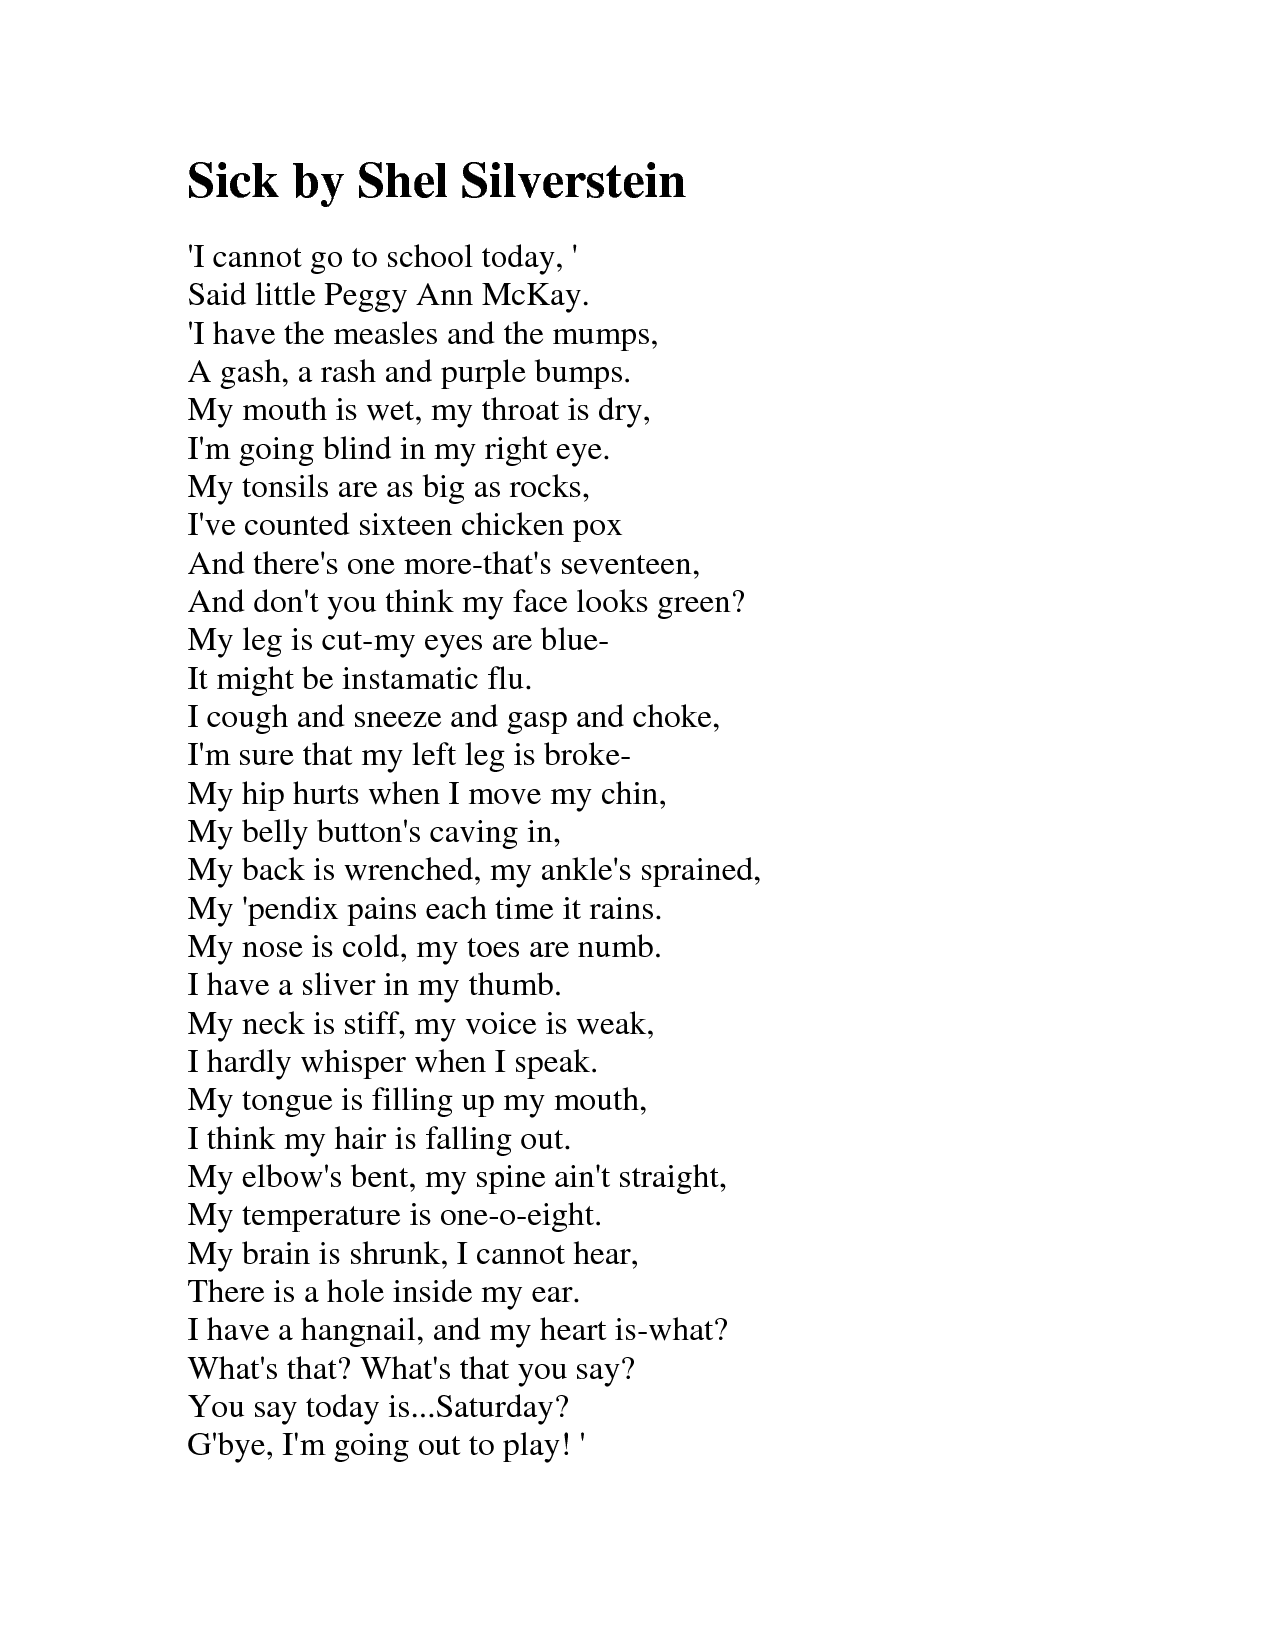 Silverstein poems top ten by shel Top 10